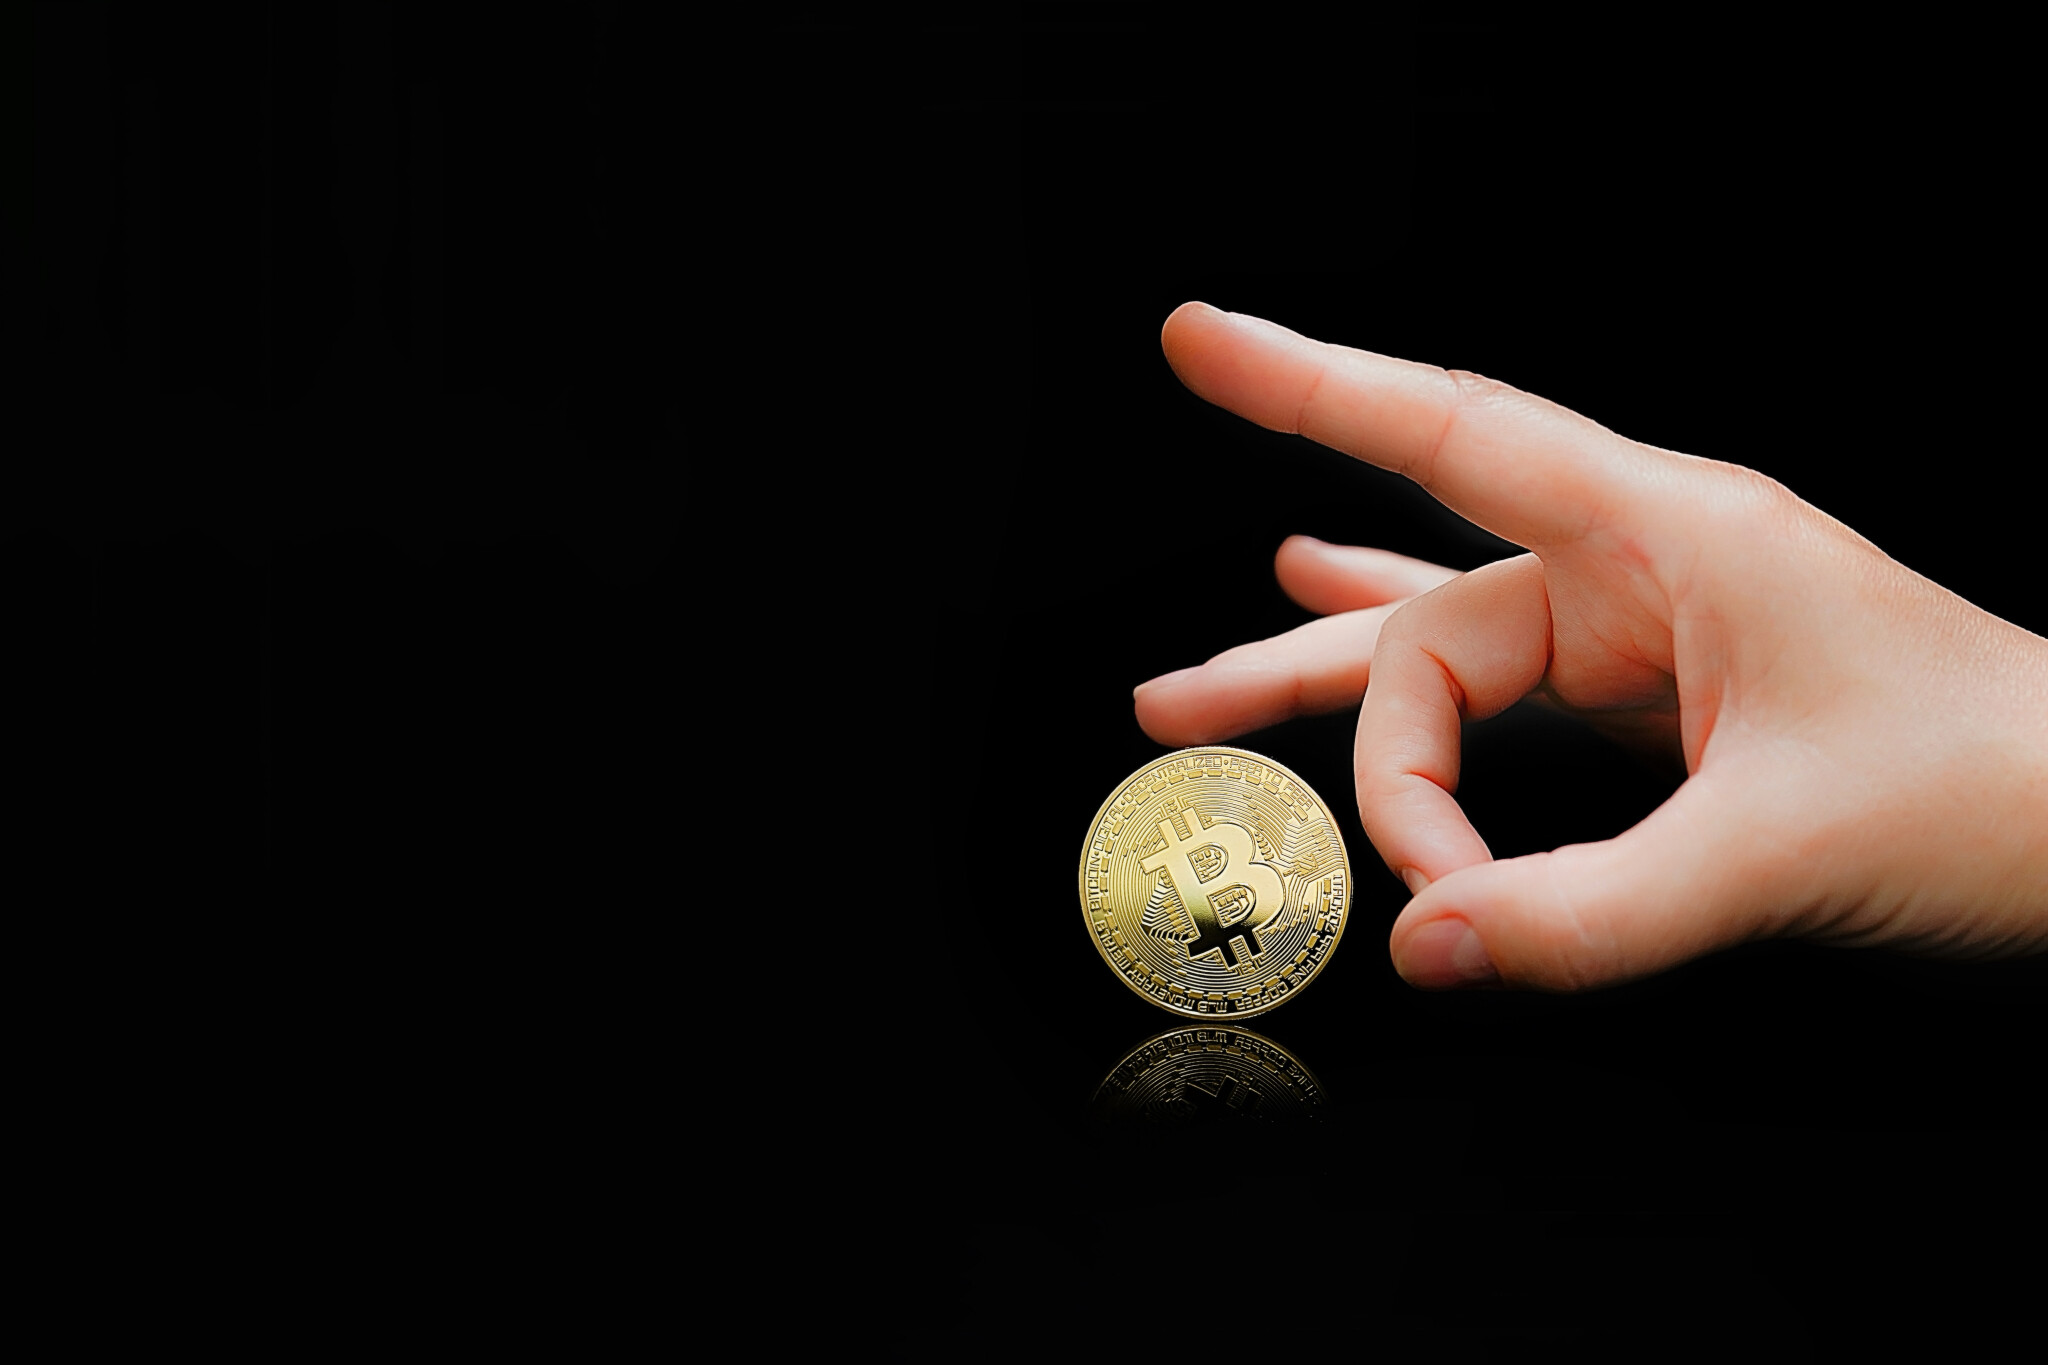 Salvador by neměl používat bitcoin jako zákonné platidlo. Upozorňuje na to Mezinárodní měnový fond